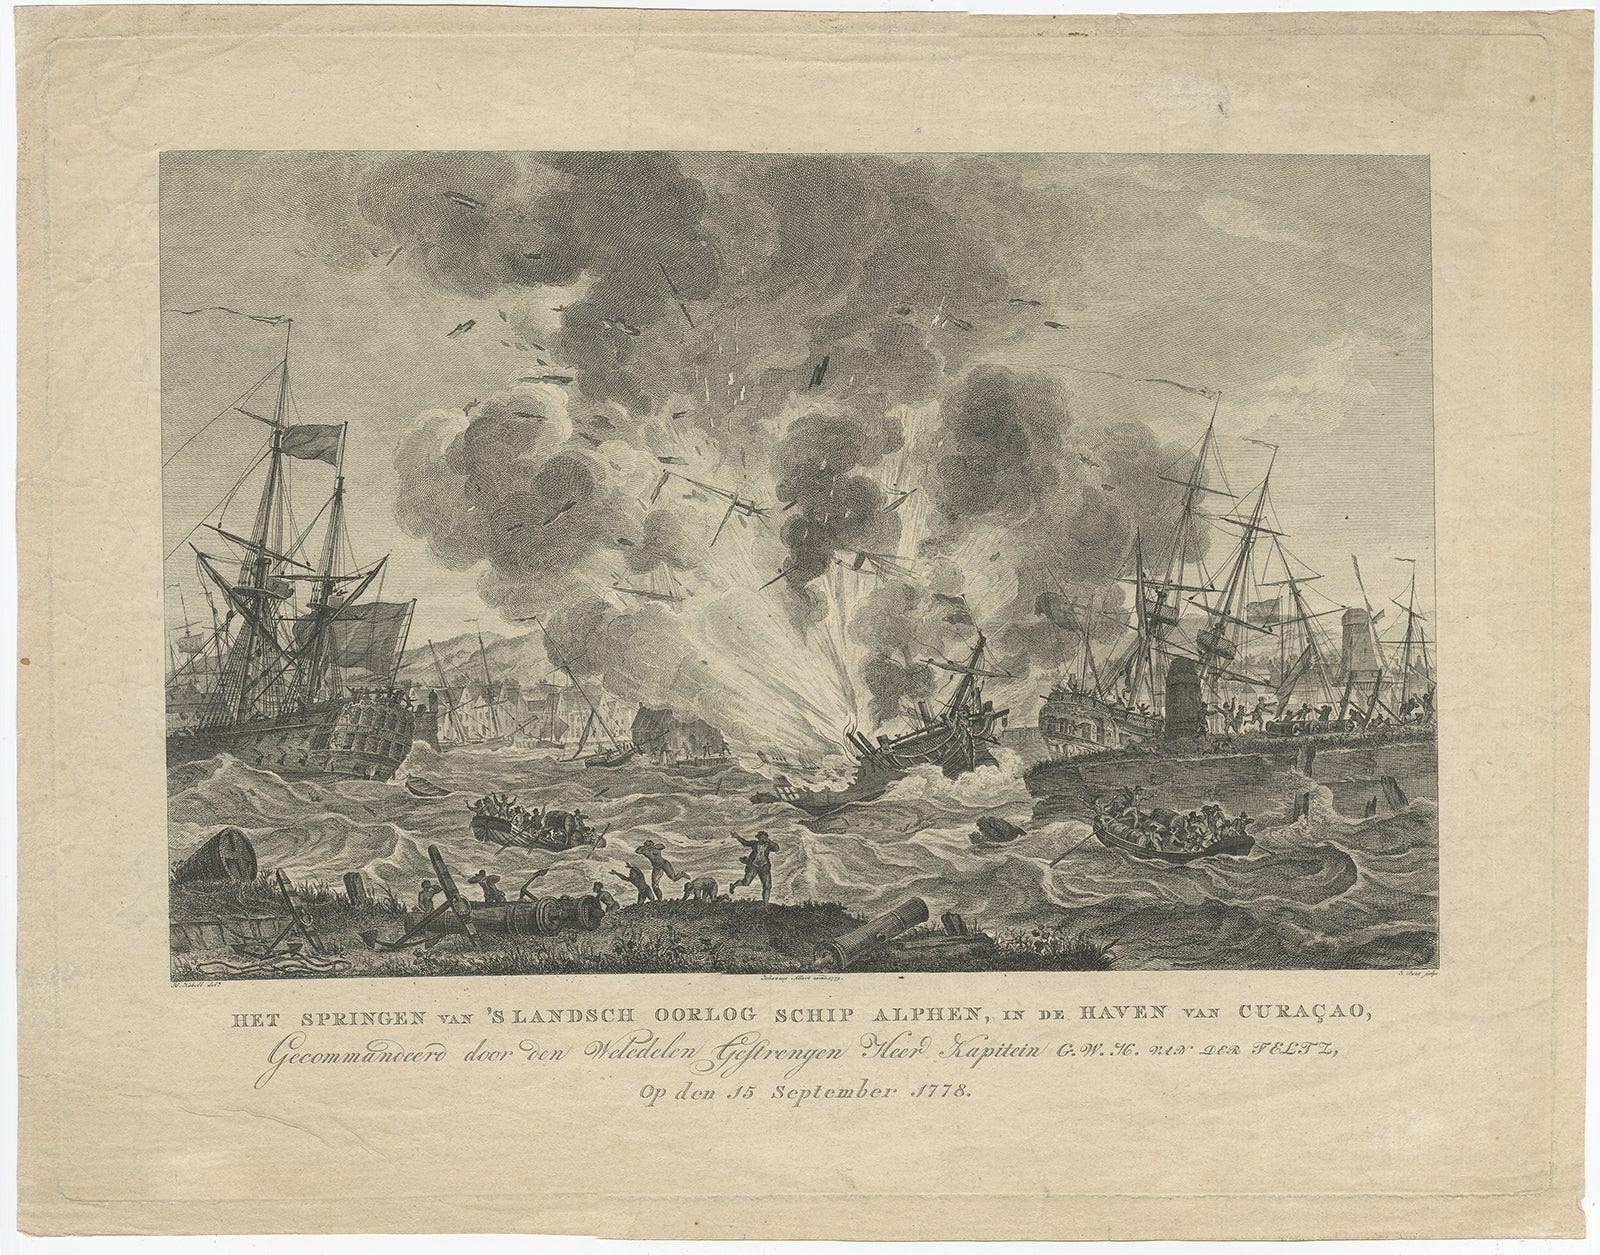 Antique print titled 'Het springen van 's Landsch Oorlog Schip Alphen, in de haven van Curacao, gecommandeerd door den weledelen Gestrengen heer Kapitein G.W.H. van der Feltz, op den 15 September 1778'. This print depicts the exploding of the